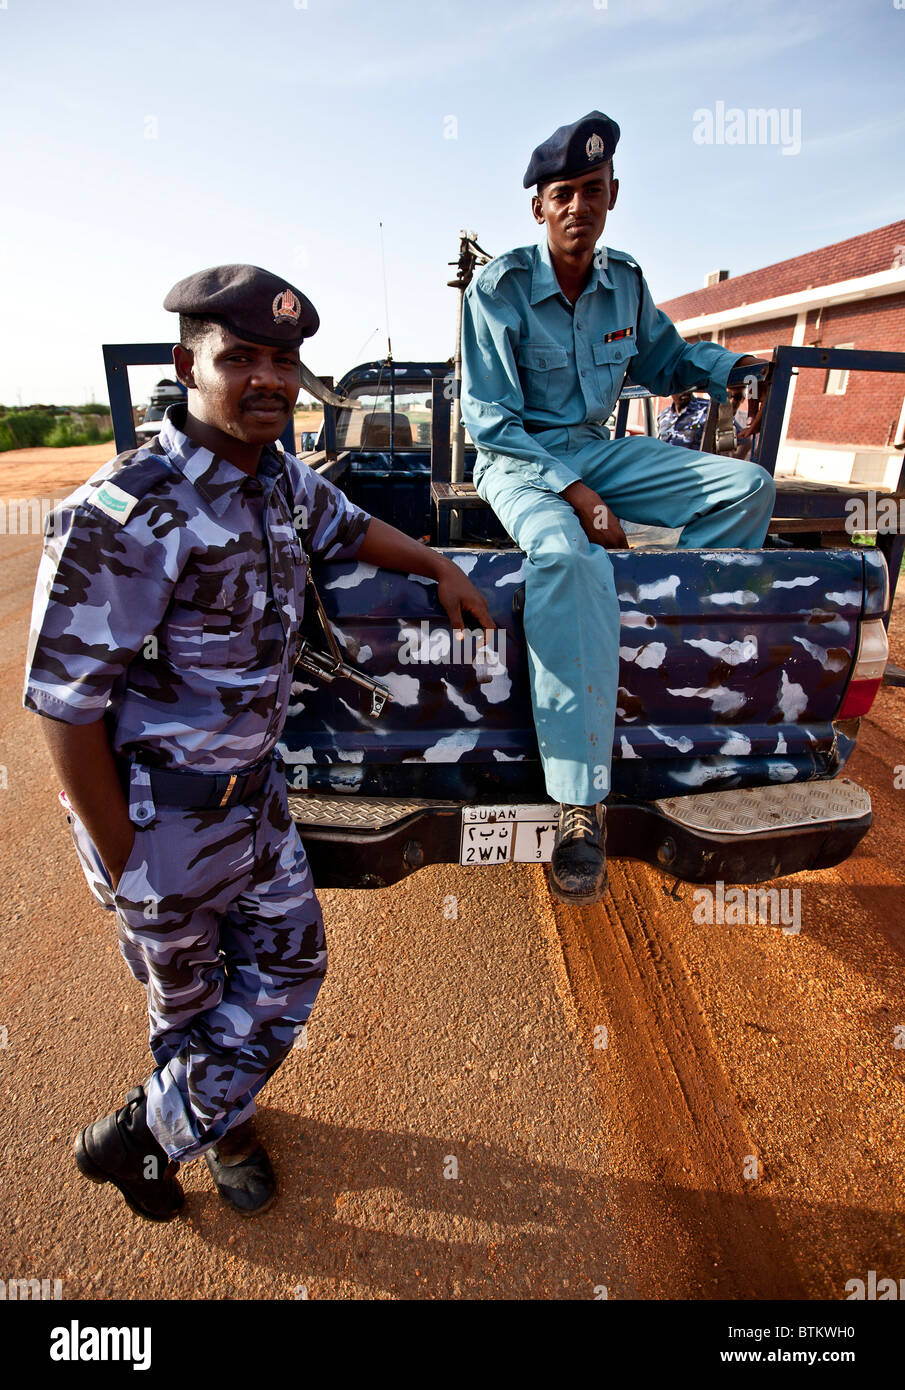 los-soldados-sudaneses-en-su-camioneta-patroling-la-zona-btkwh0.jpg